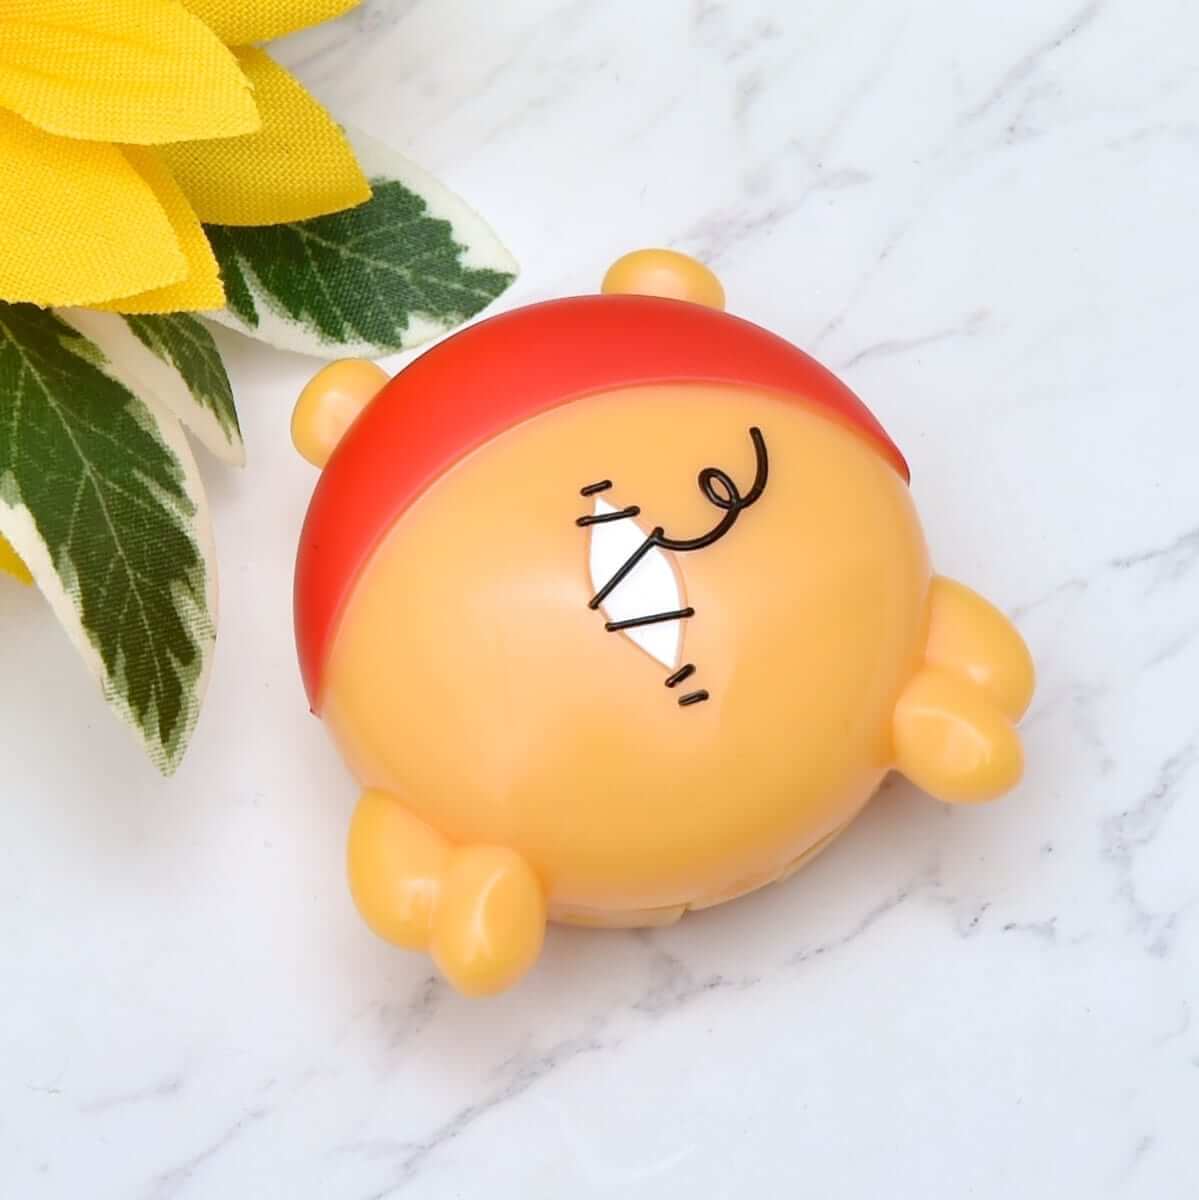 ミニコンパクトモイスチャーバーム -ウィニー ザ プー-　Mini Compact Moisture Balm -Winnie the Pooh-